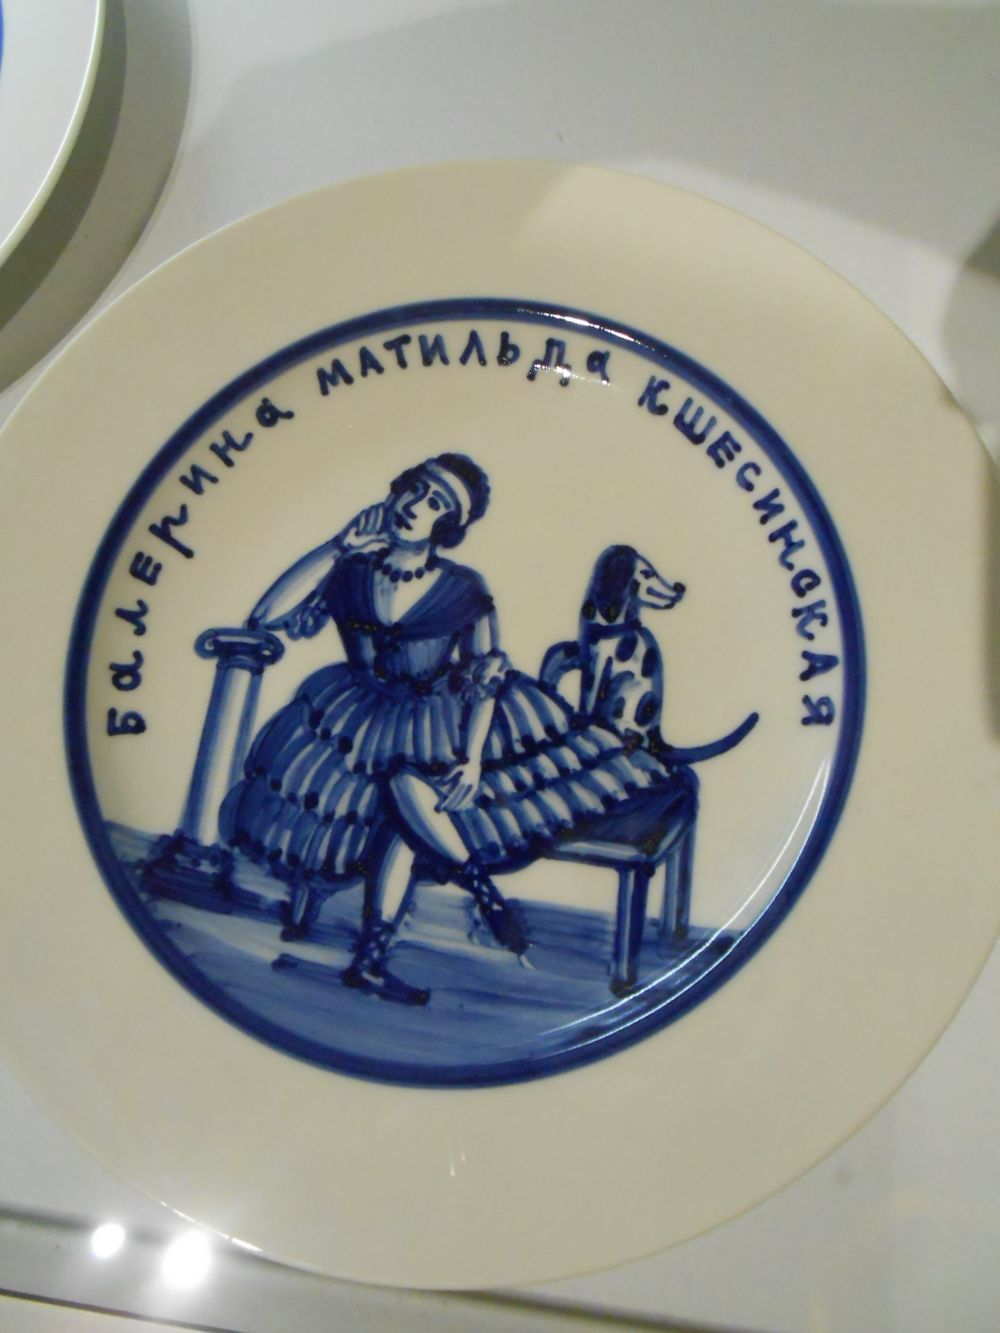 Художники чутко отреагировали на тренд и изобразили Матильду Кшесинскую на одной из тарелок.